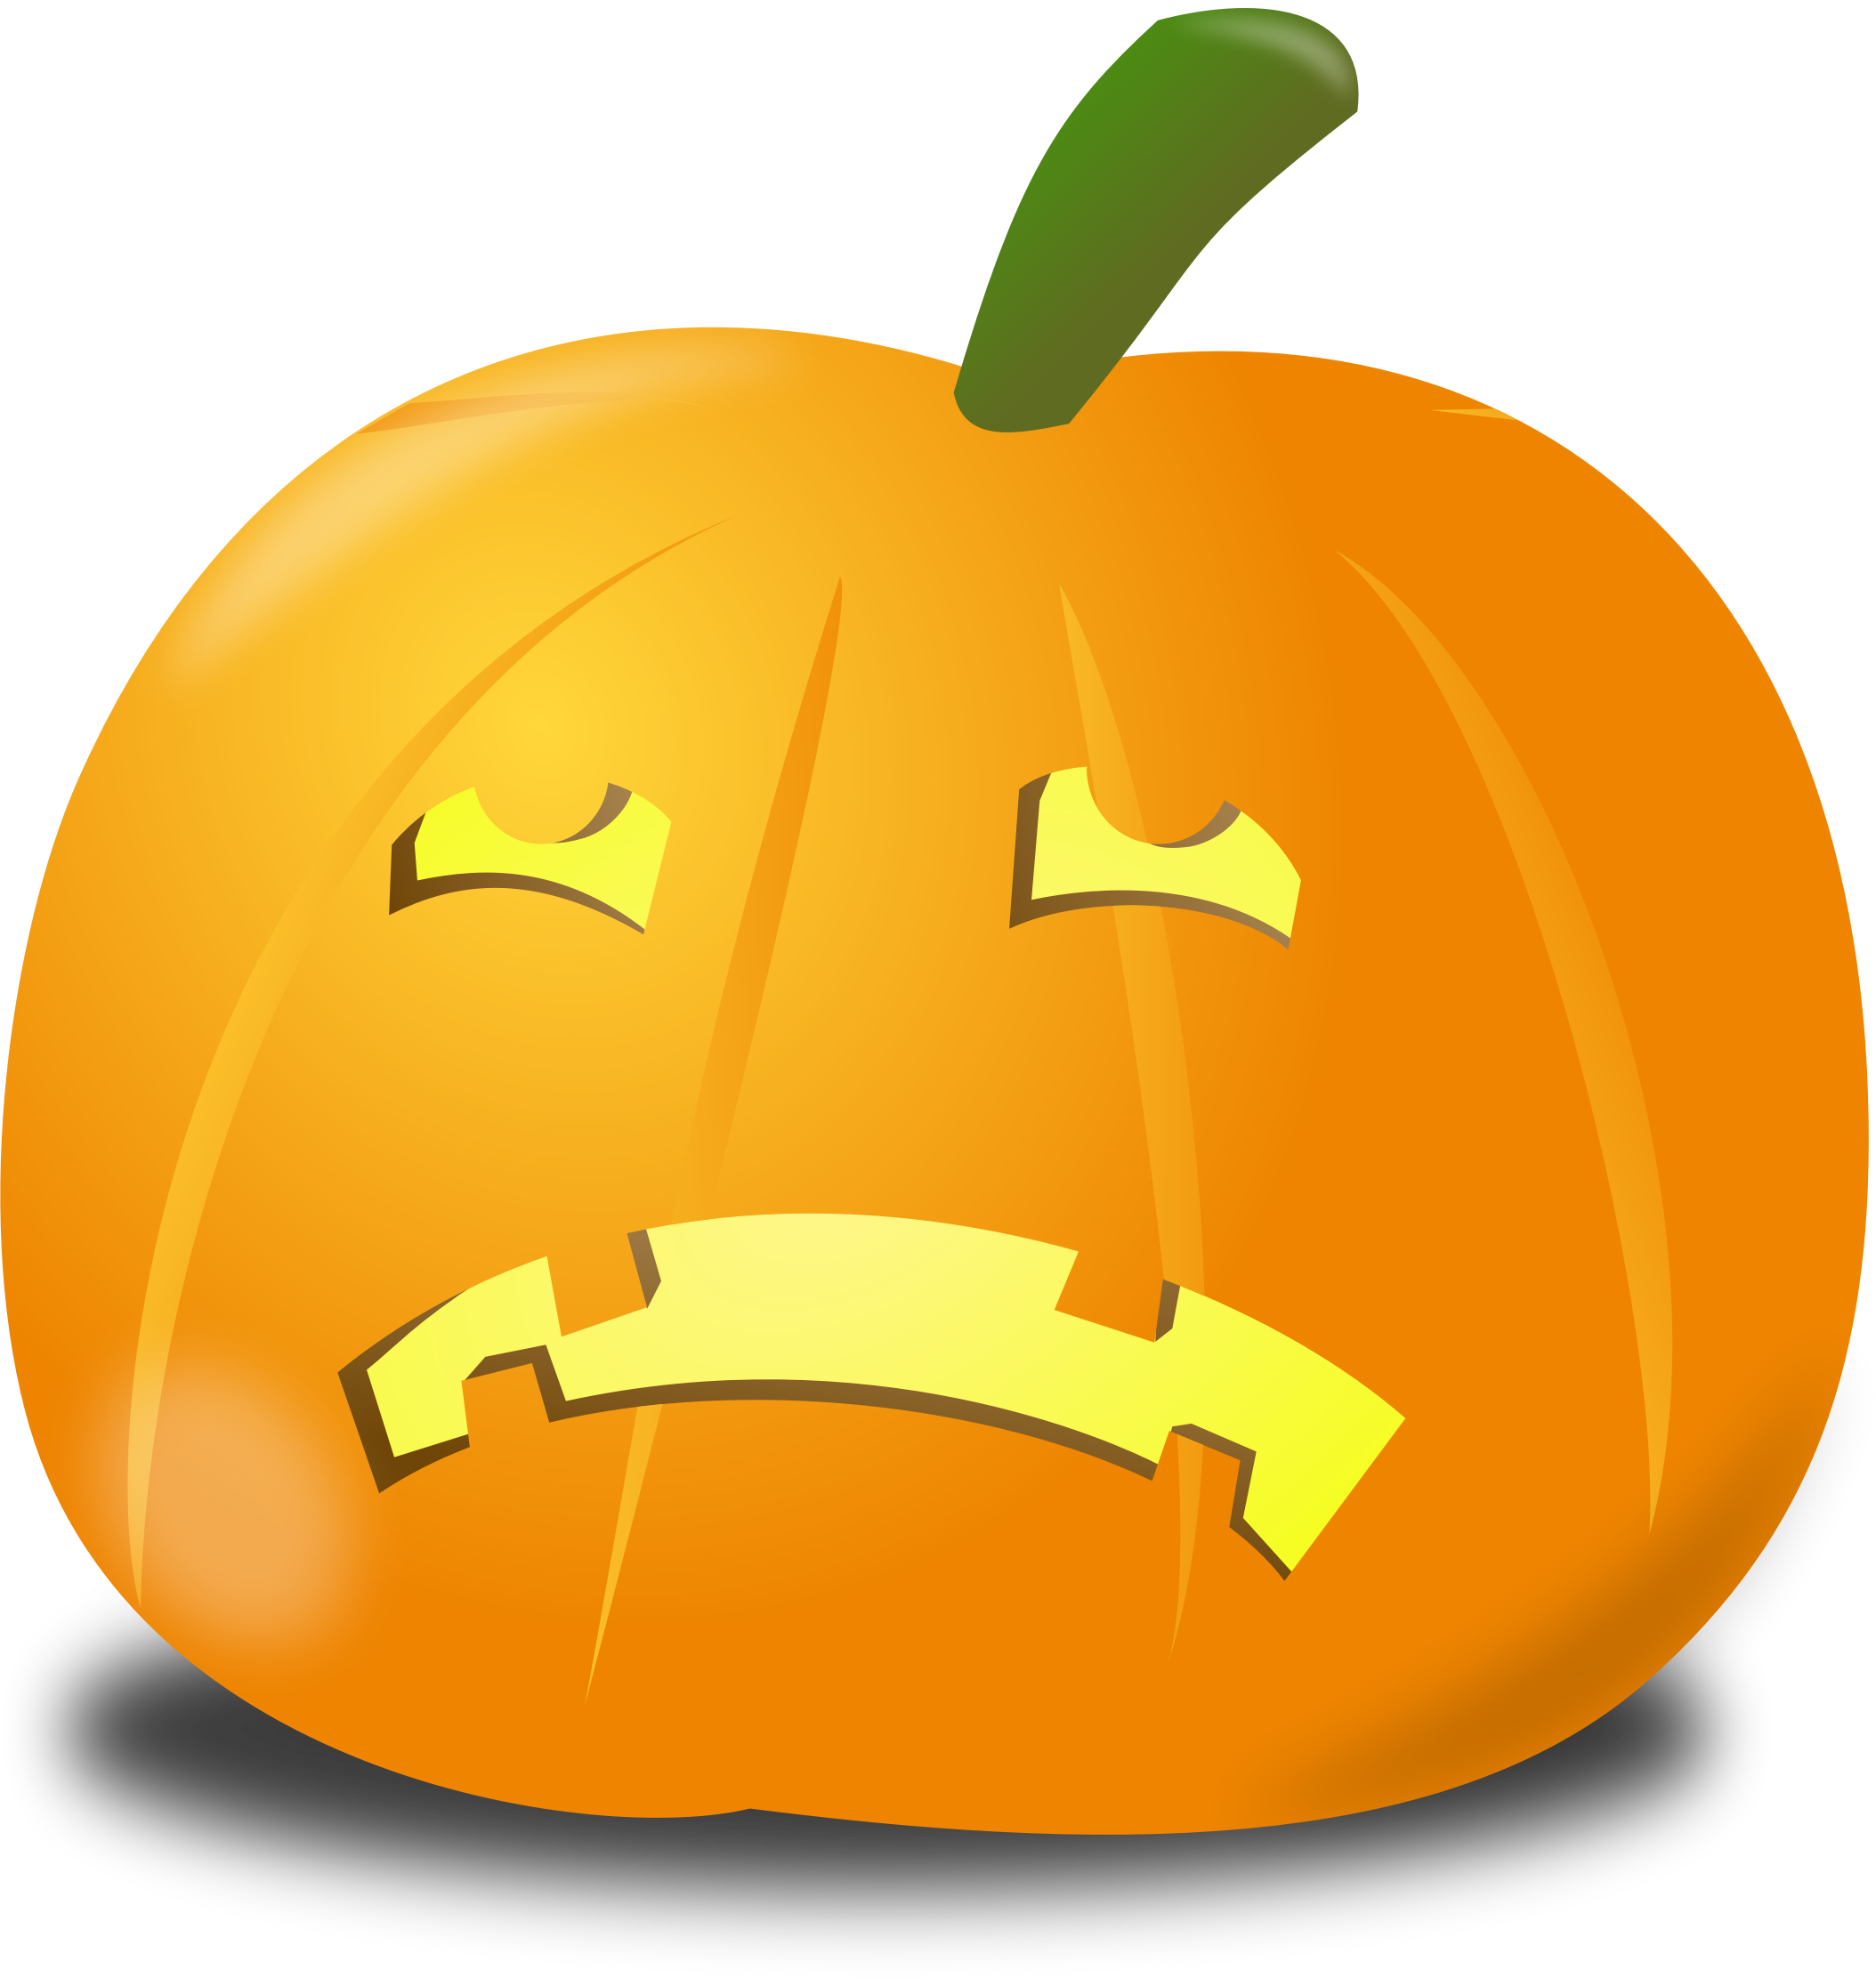 Sad Pumpkin drawing free image download